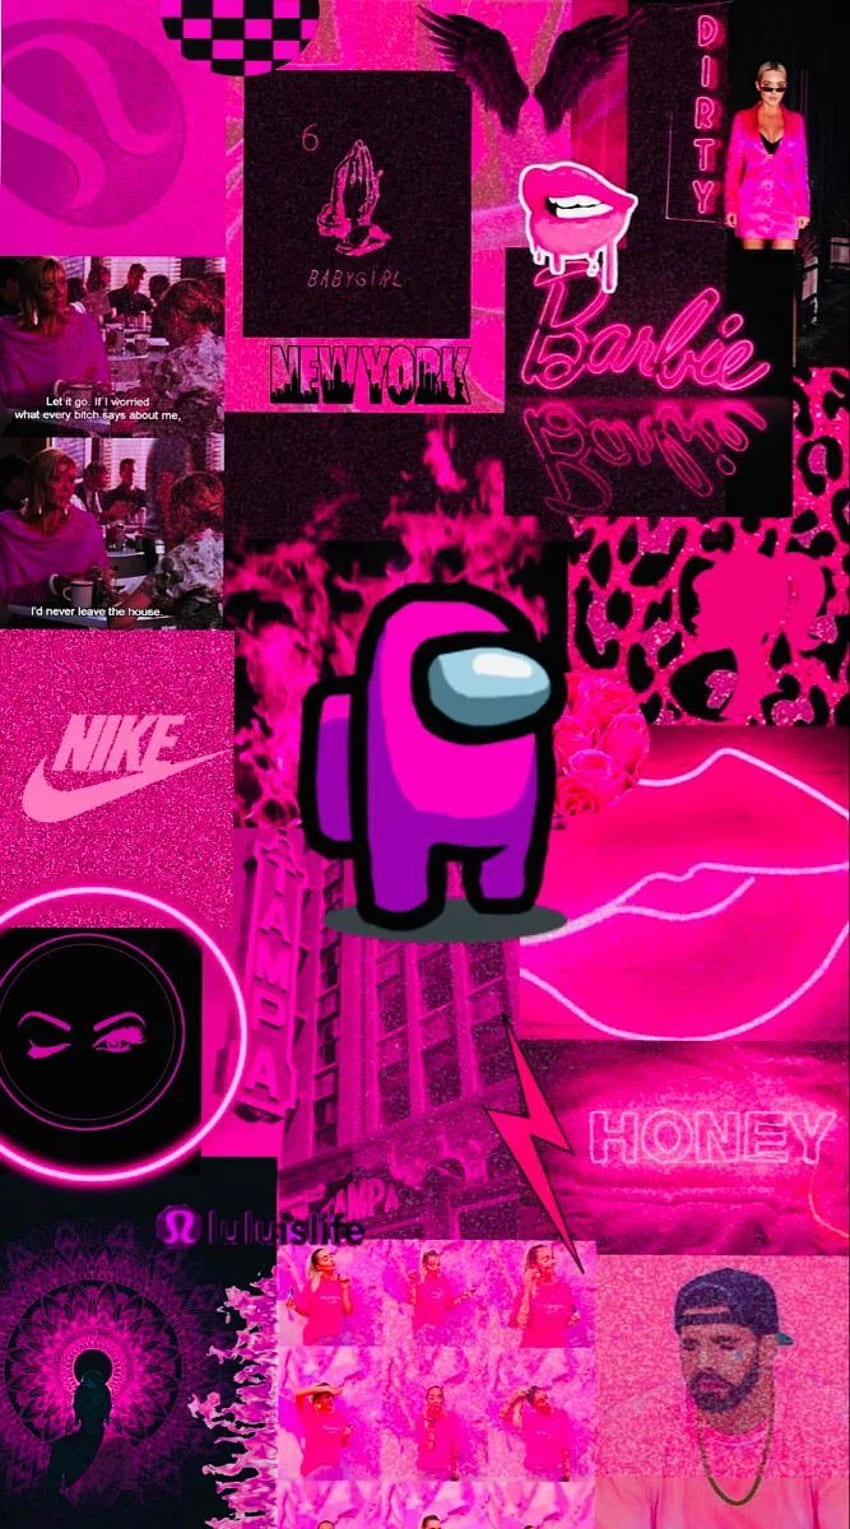 Bạn biết không, Pink Among Us backgrounds là một trong những xu hướng hot nhất hiện nay trong việc trang trí màn hình máy tính. Đừng bỏ lỡ cơ hội độc đáo này để có được không gian làm việc rực rỡ và tươi sáng hơn, chỉ với một hình nền màu hồng xinh xắn.